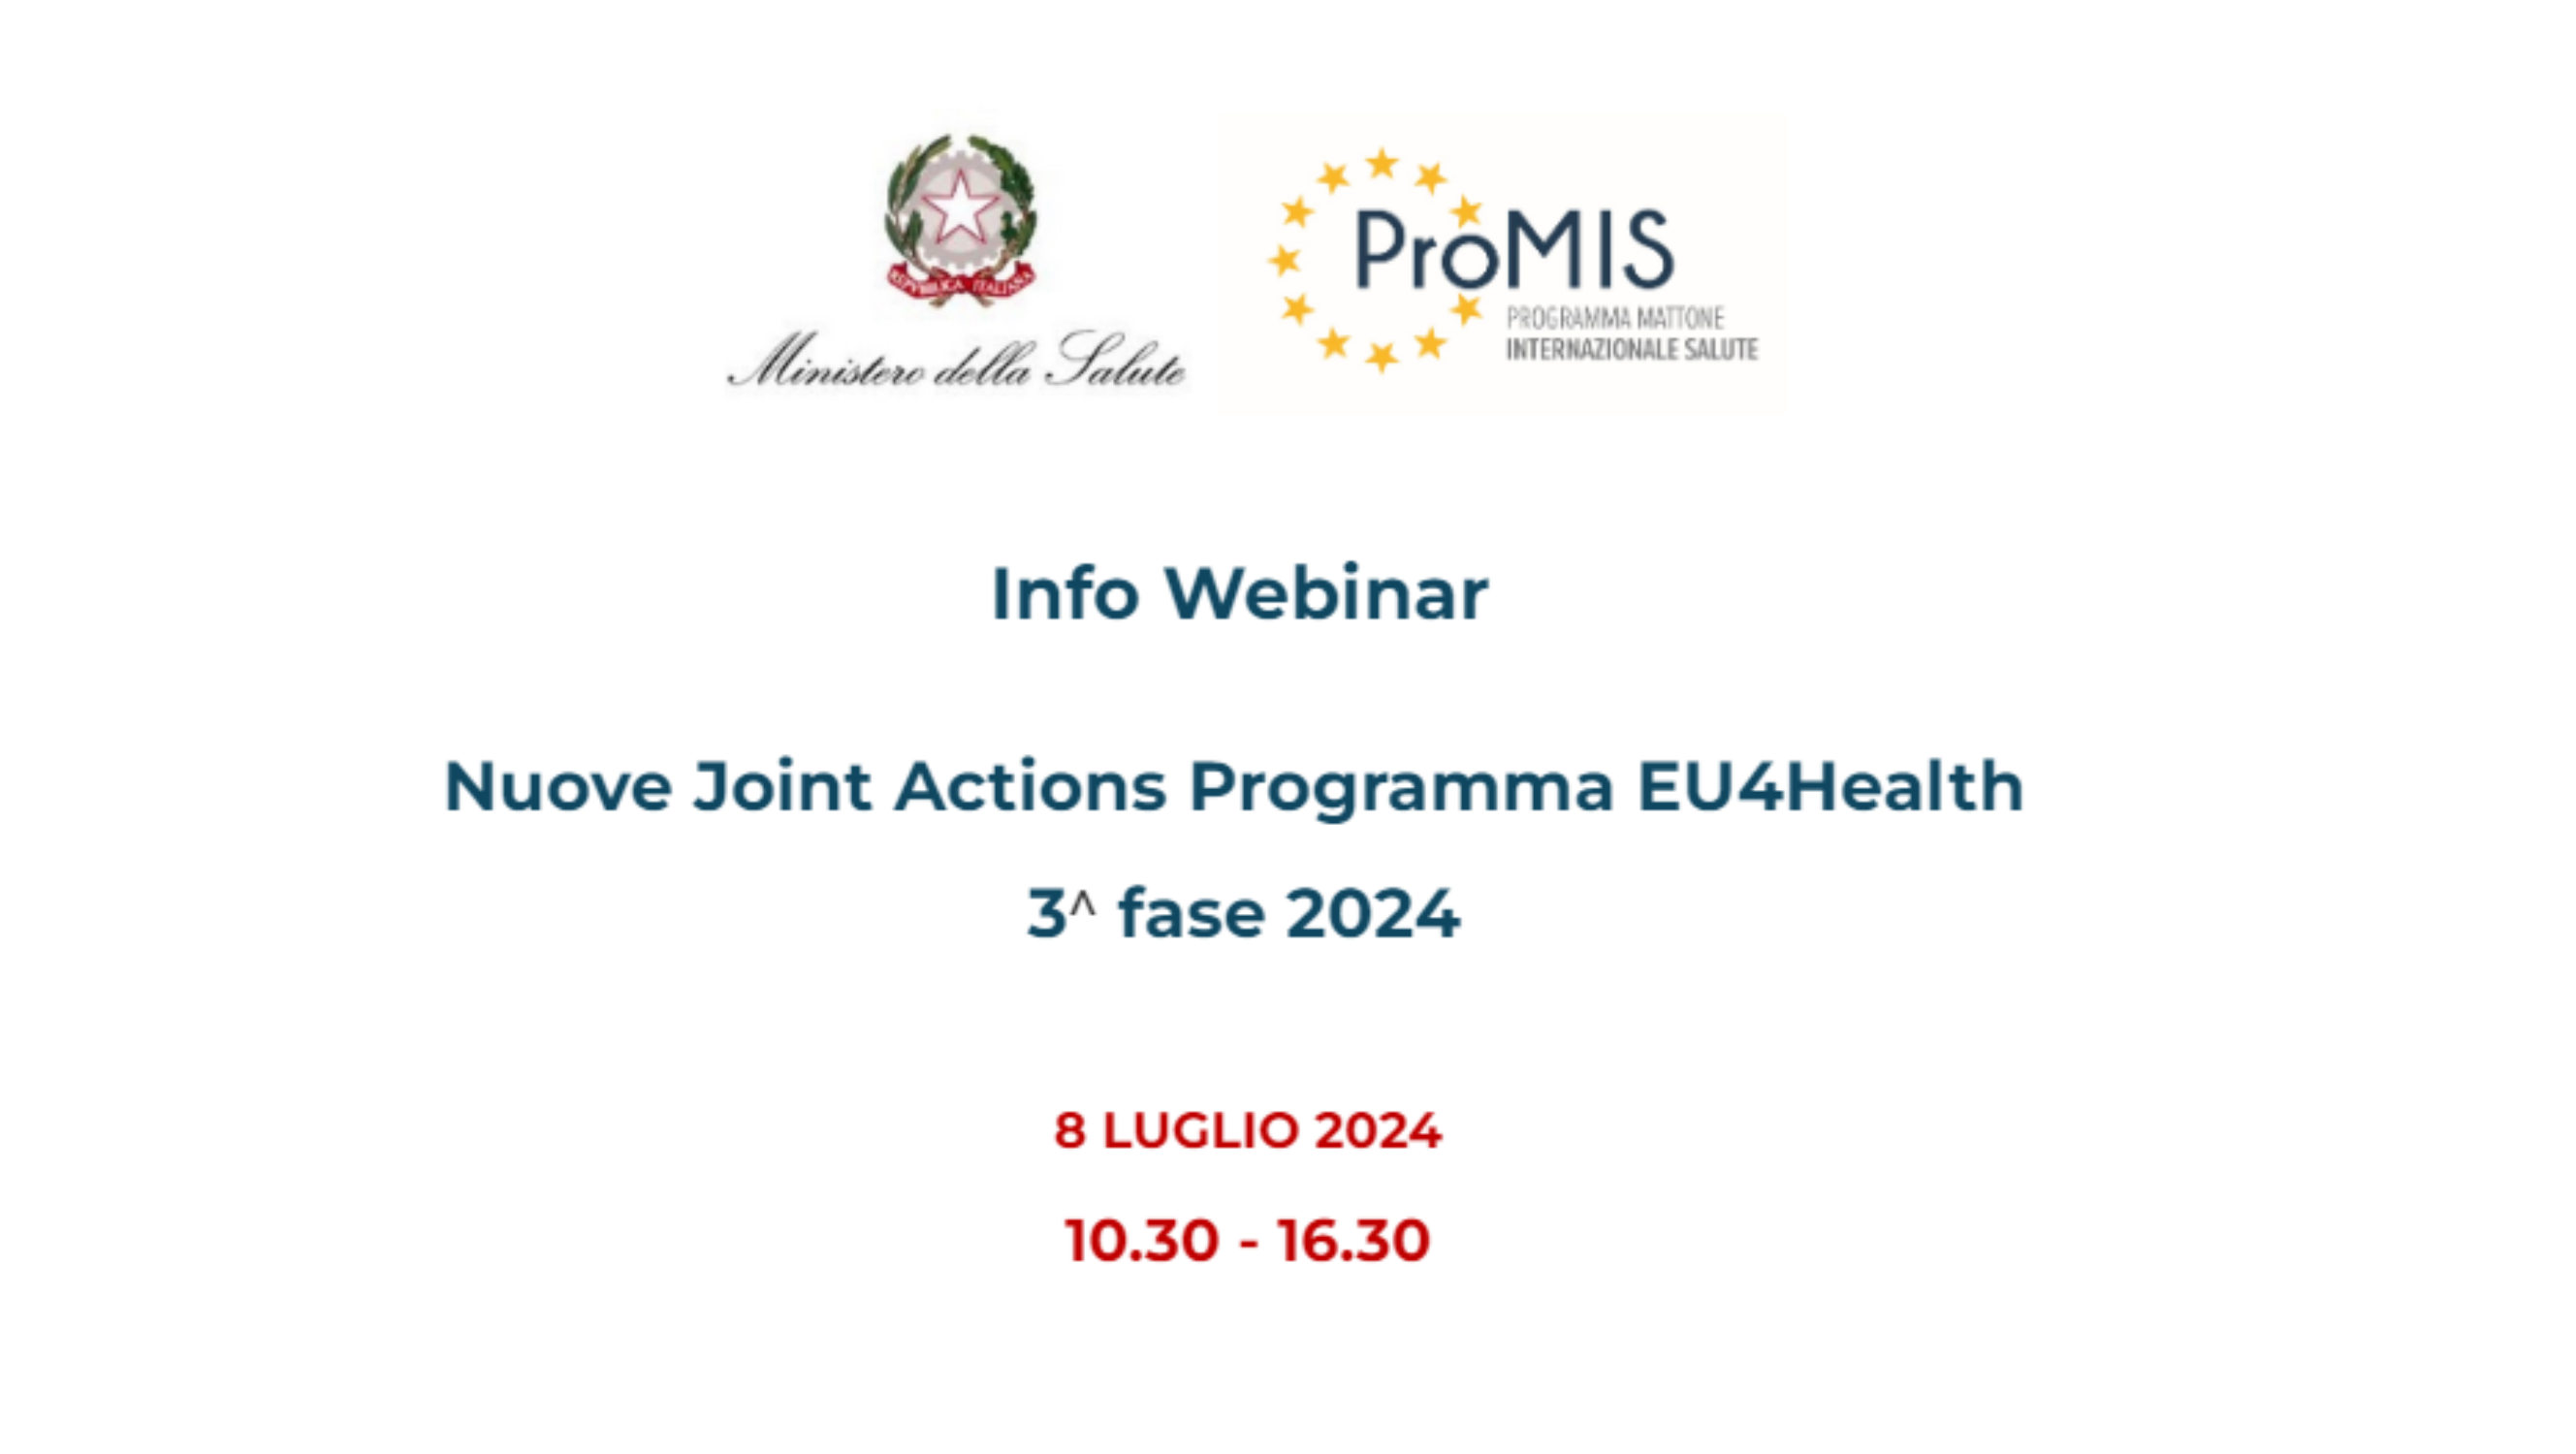 Il Ministero della salute, con la collaborazione del ProMIS, organizza l’Info Webinar dal titolo “Nuove Joint Actions Programma EU4Health – 3^ fase 2024” che si terrà il prossimo 08 luglio, dalle ore 10.30 alle 16.30.